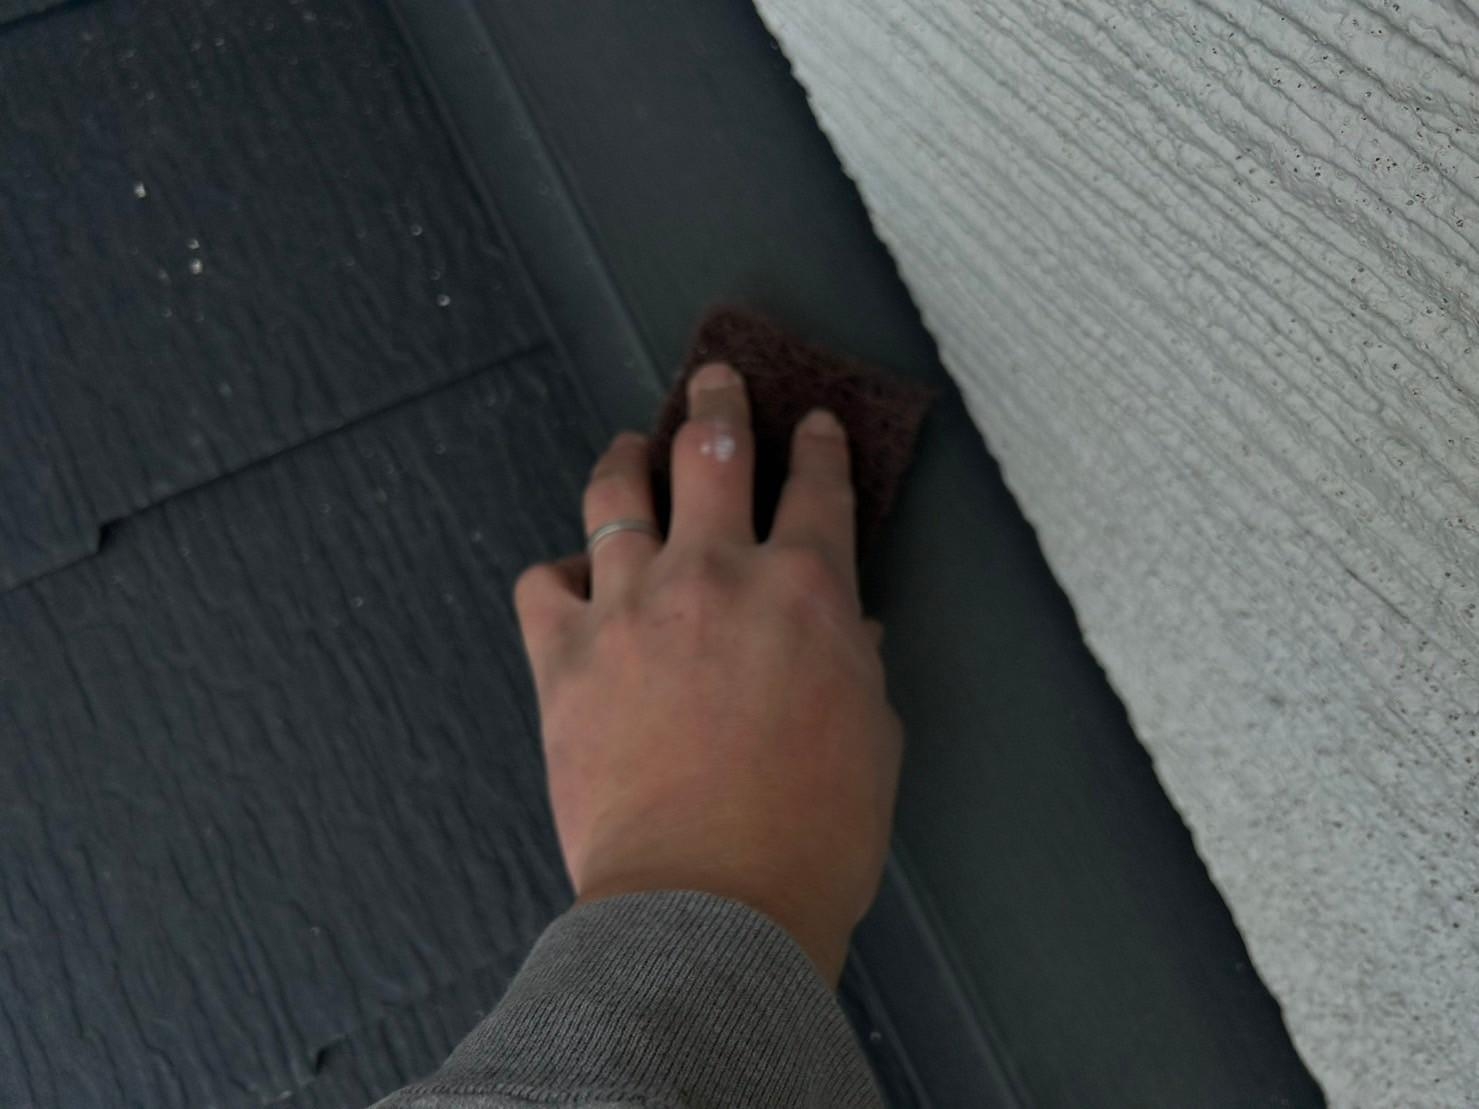 福岡県福岡市東区香住ケ丘のA様邸でサイディングの割れやコーキングの剥落を起こしている外壁の補修を行いつつ、色褪せや汚れが発生している屋根と一緒に塗り替えを行いました。1/27完成です。【ホームページより】